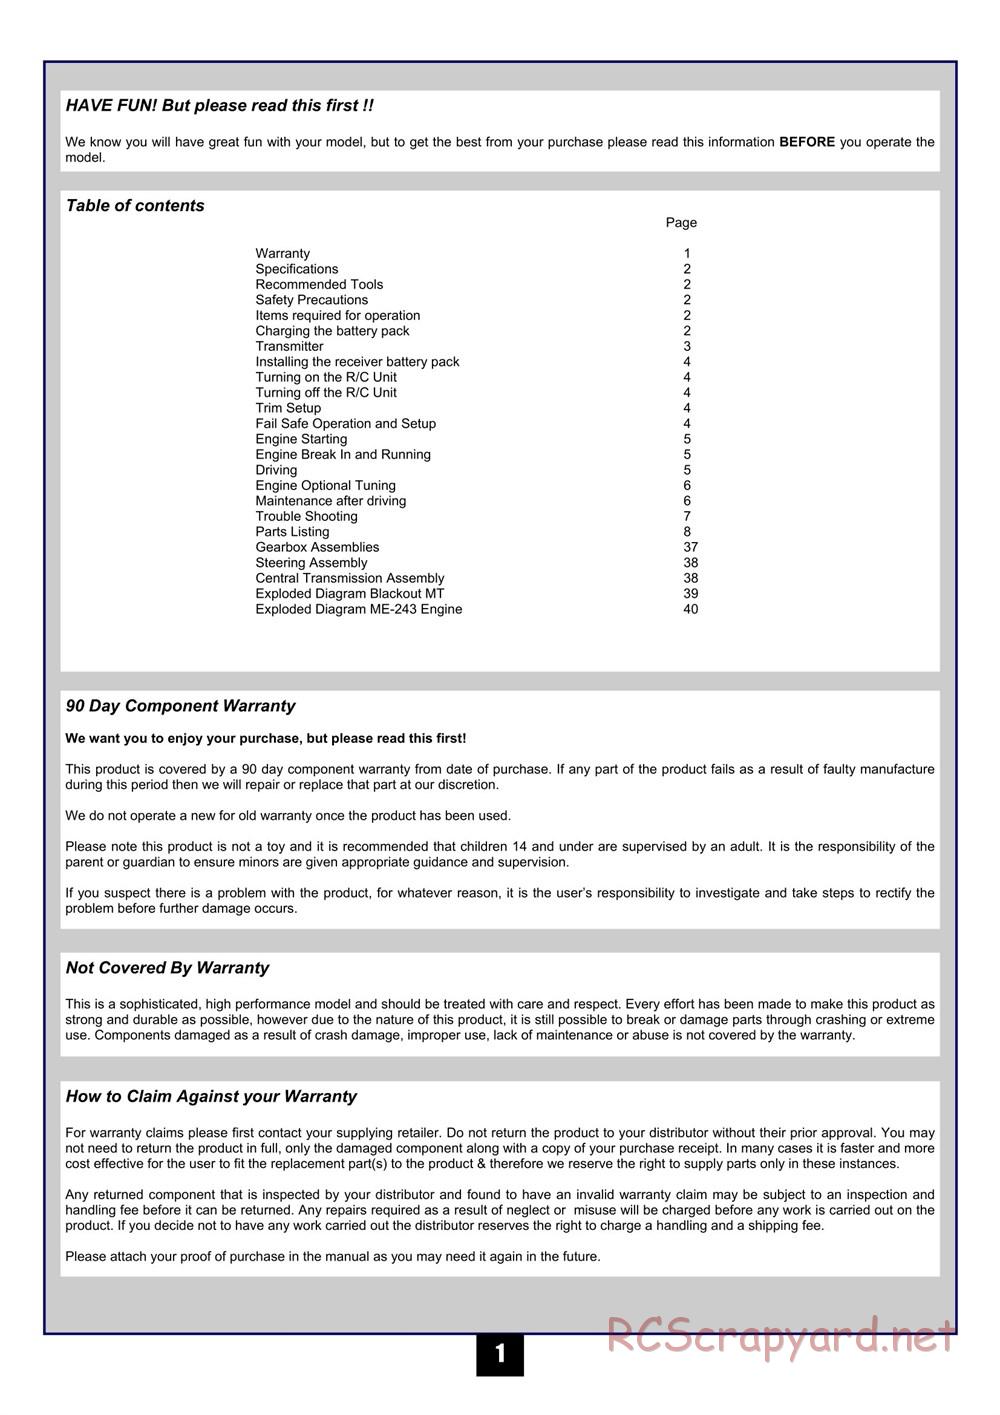 HPI - Maverick Blackout MT - Manual - Page 2